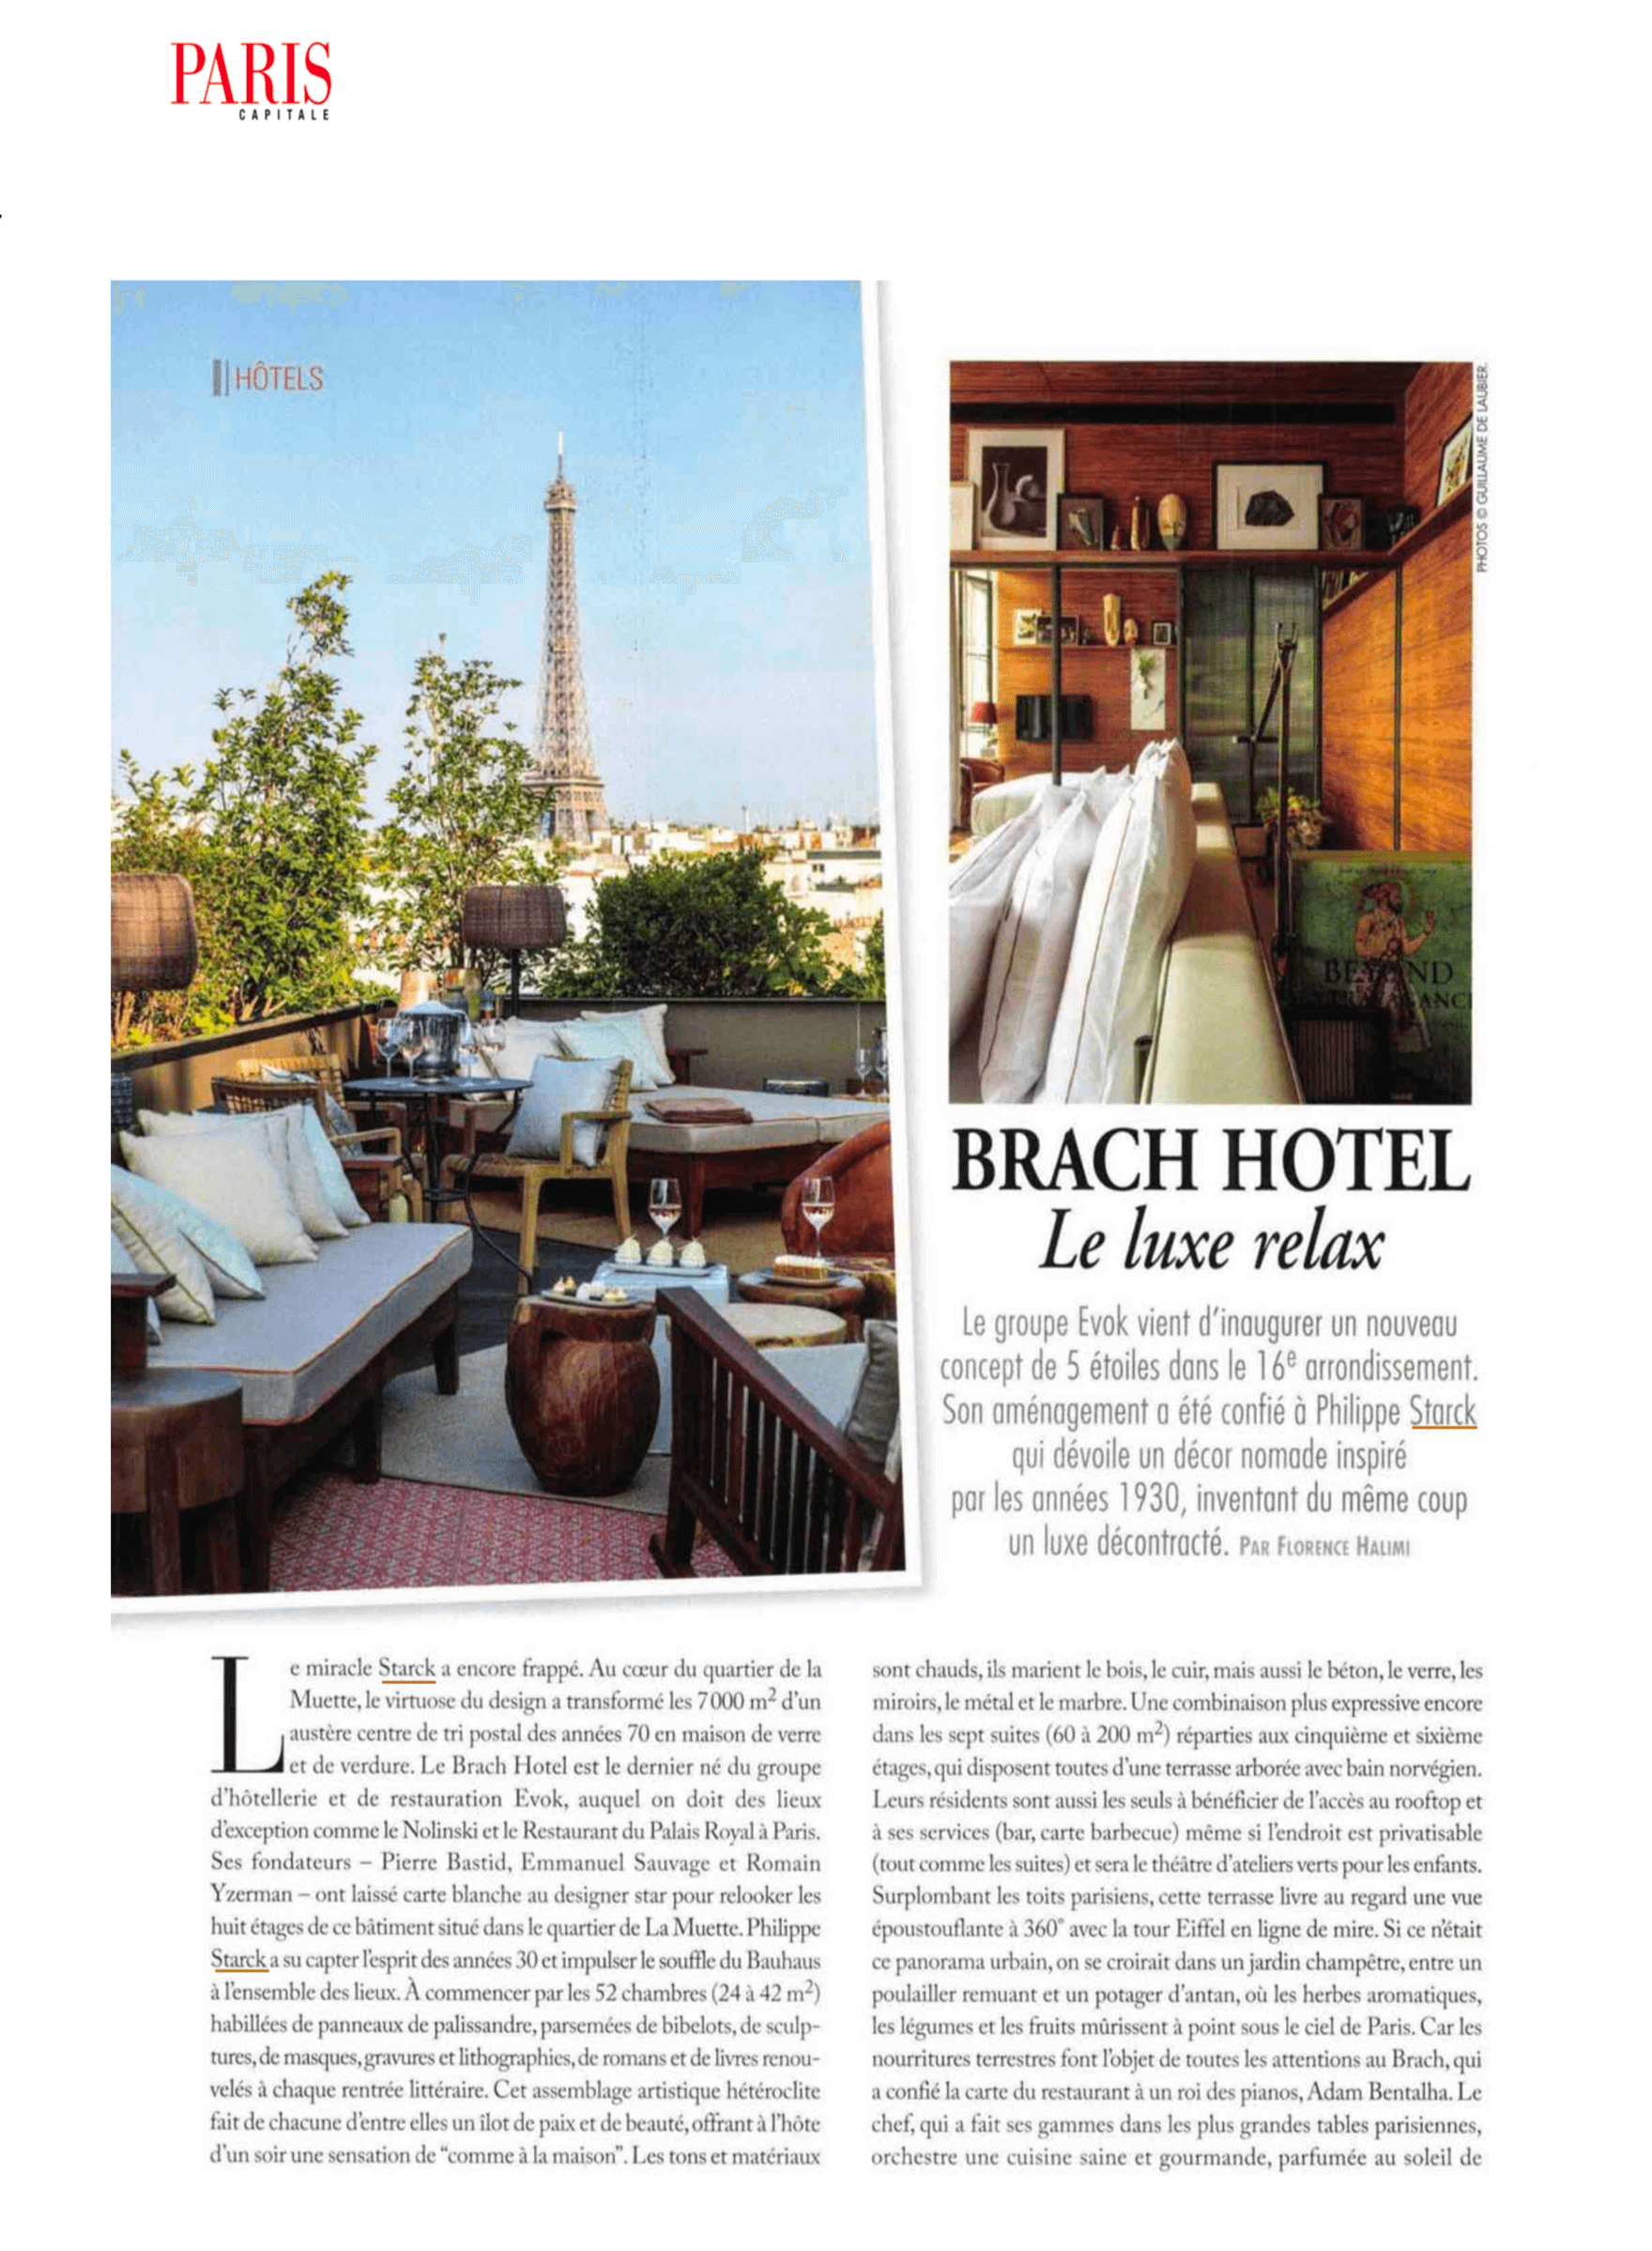 Paris Capitale - Brach Hotel Le luxe relax.